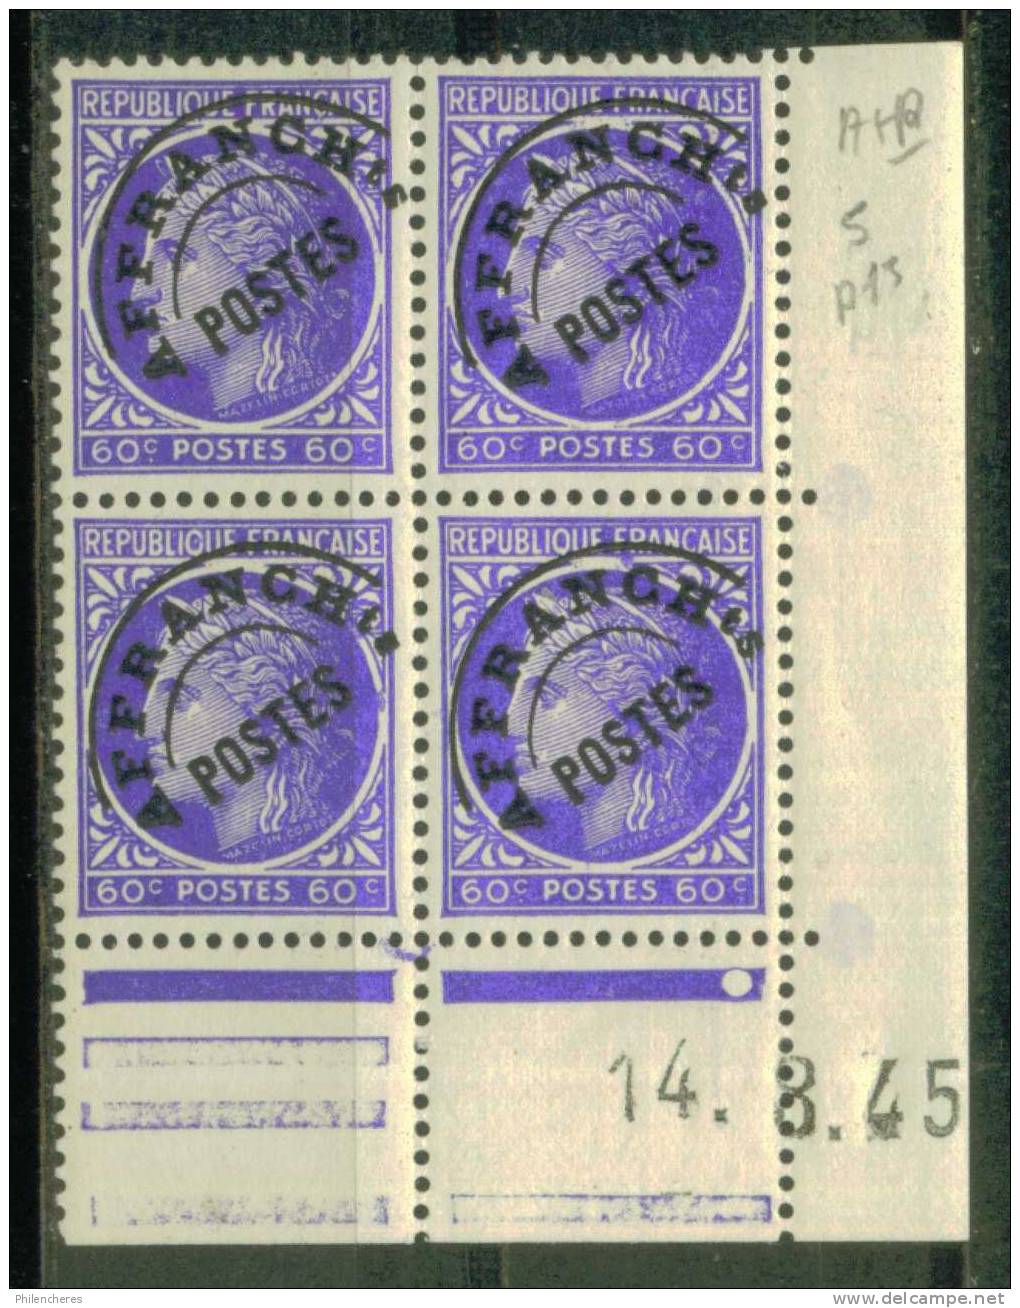 France Bloc De 4 - Coin Daté 1945 - Yvert Préoblitéré N° 87 Xx - Cote 4 Euros - Prix De Départ 1,5 Euro - Préoblitérés